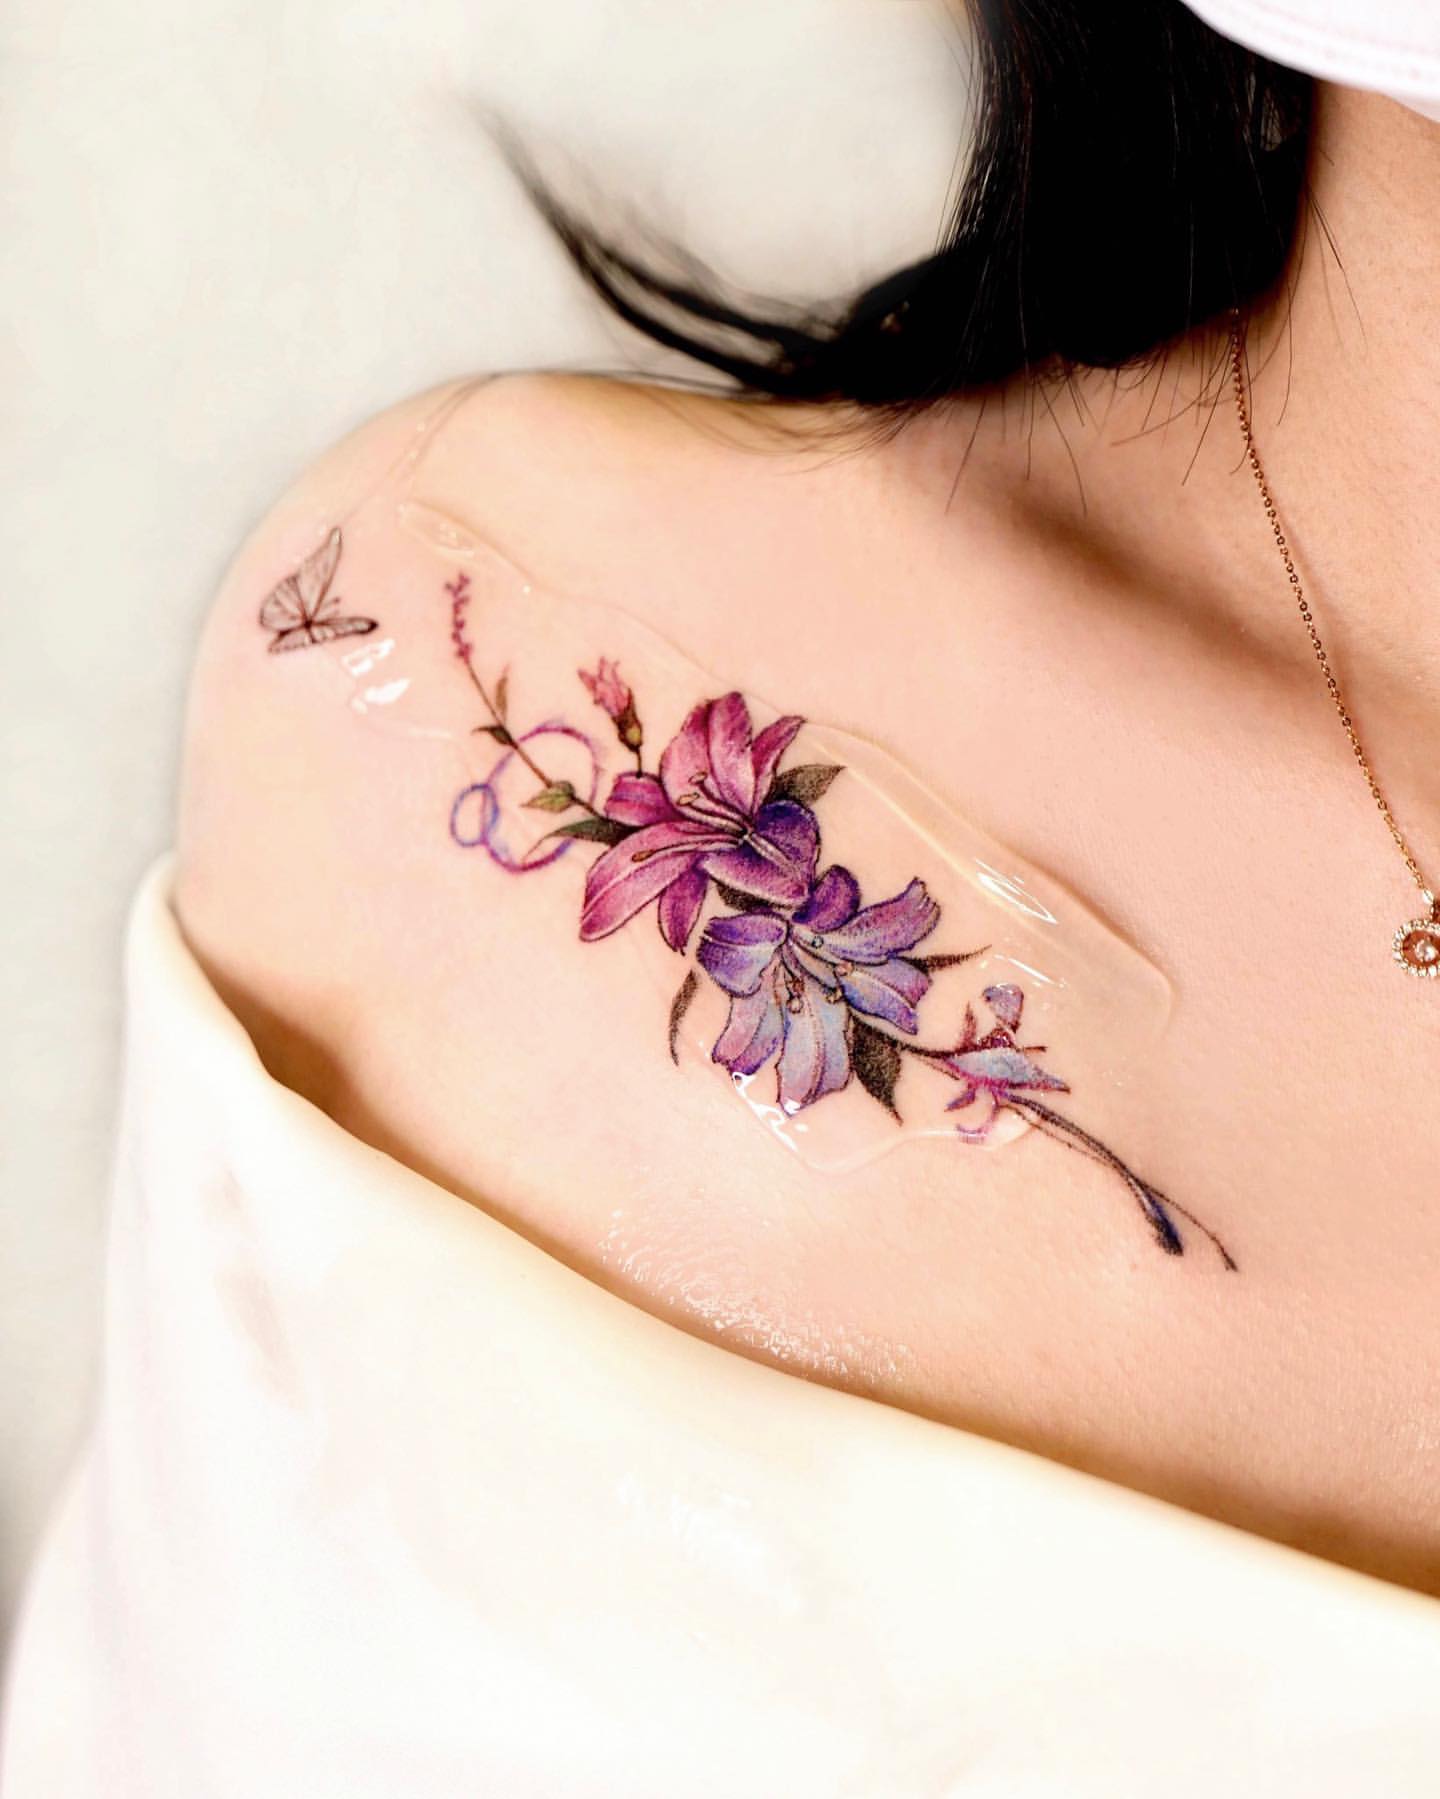 Lily Tattoo Ideas 3